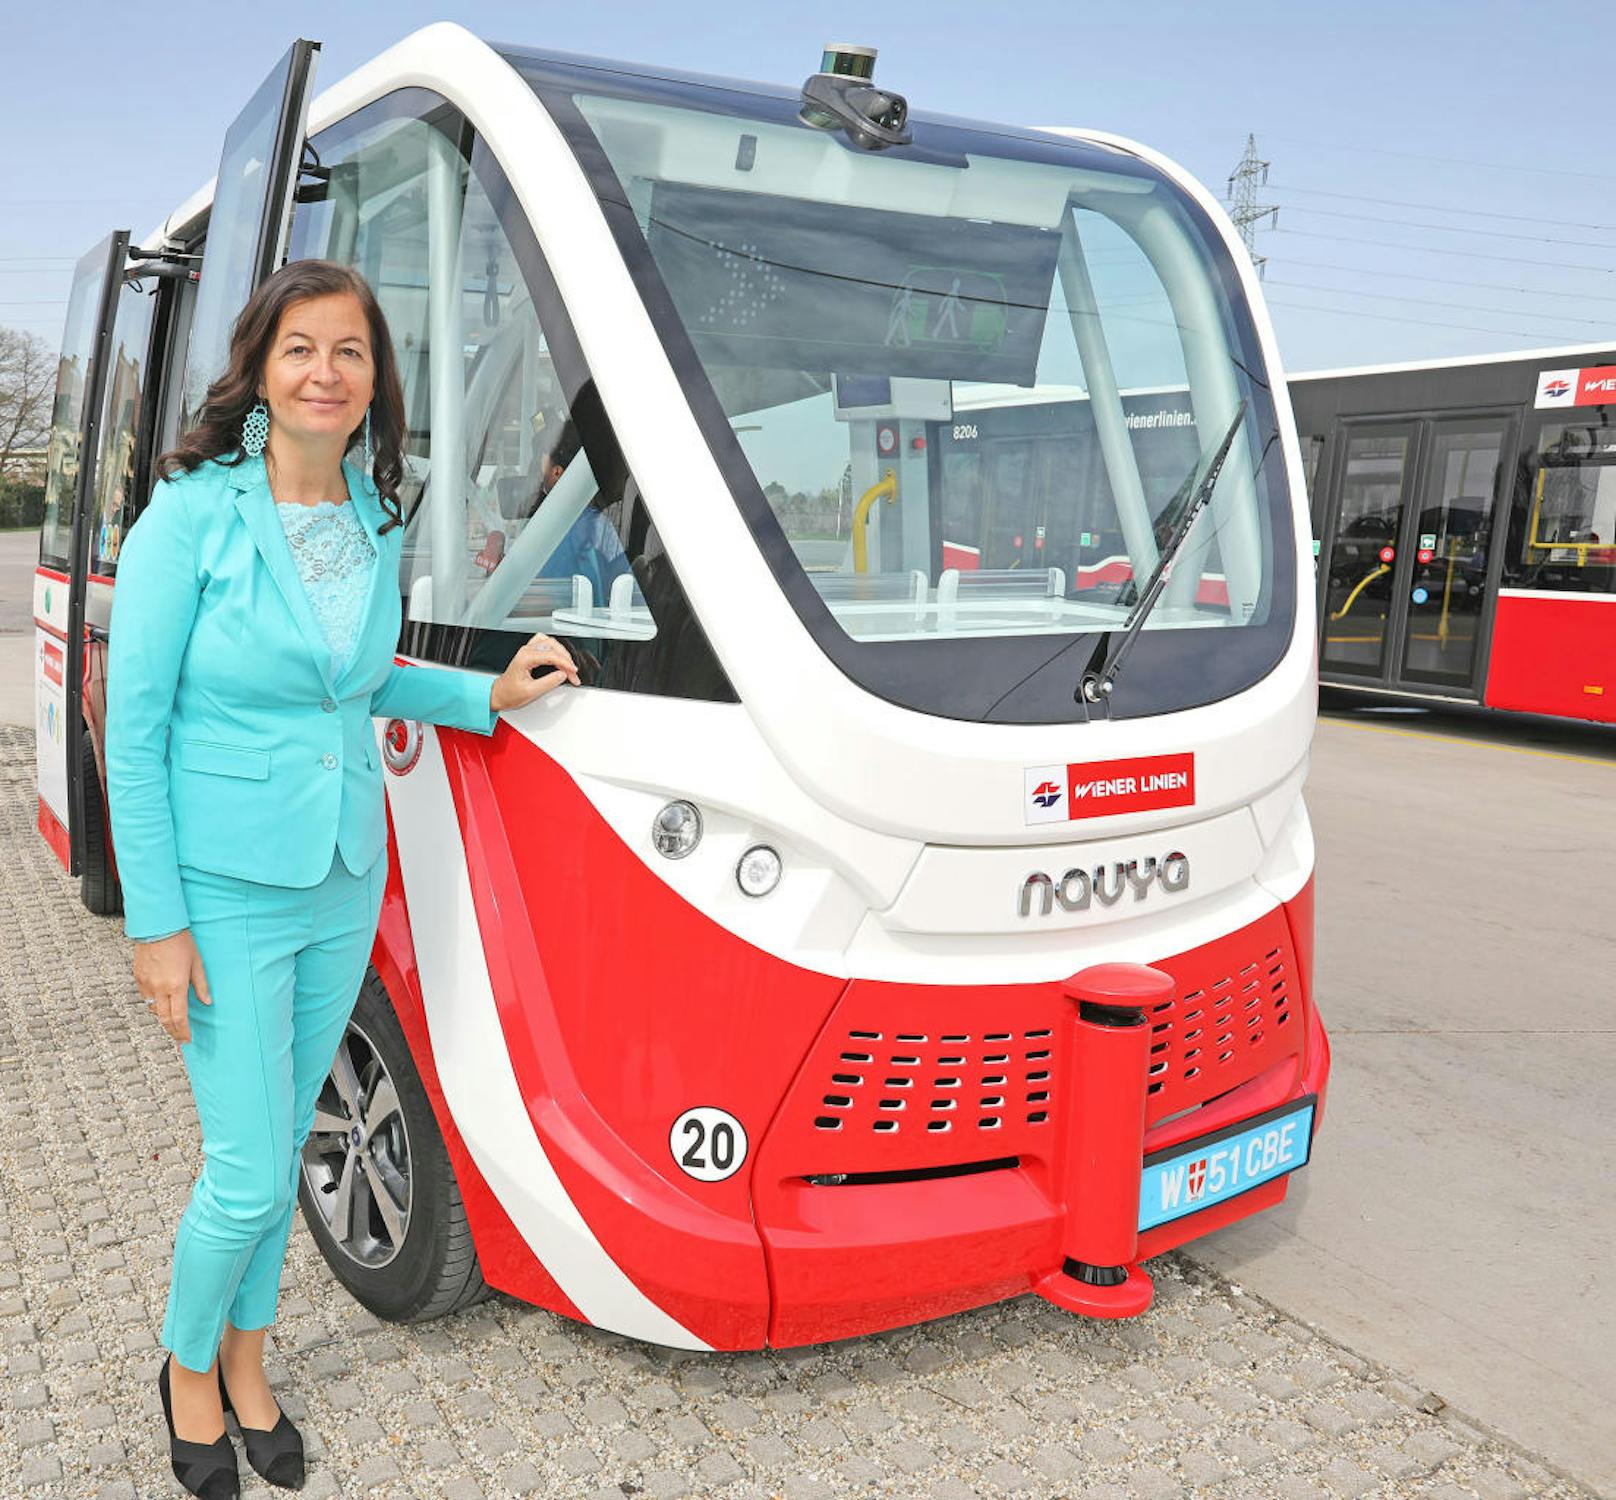 Nicht nur die neue U5 wird ohne Fahrer auskommen, auch lenkerlose Busse sind bei den Wiener Linien ein Thema. Am Mittwoch wurde einer der e-Busse vorgestellt. Öffi-Stadträtin Ulli Sima (SPÖ) drehte auch eine Runde.